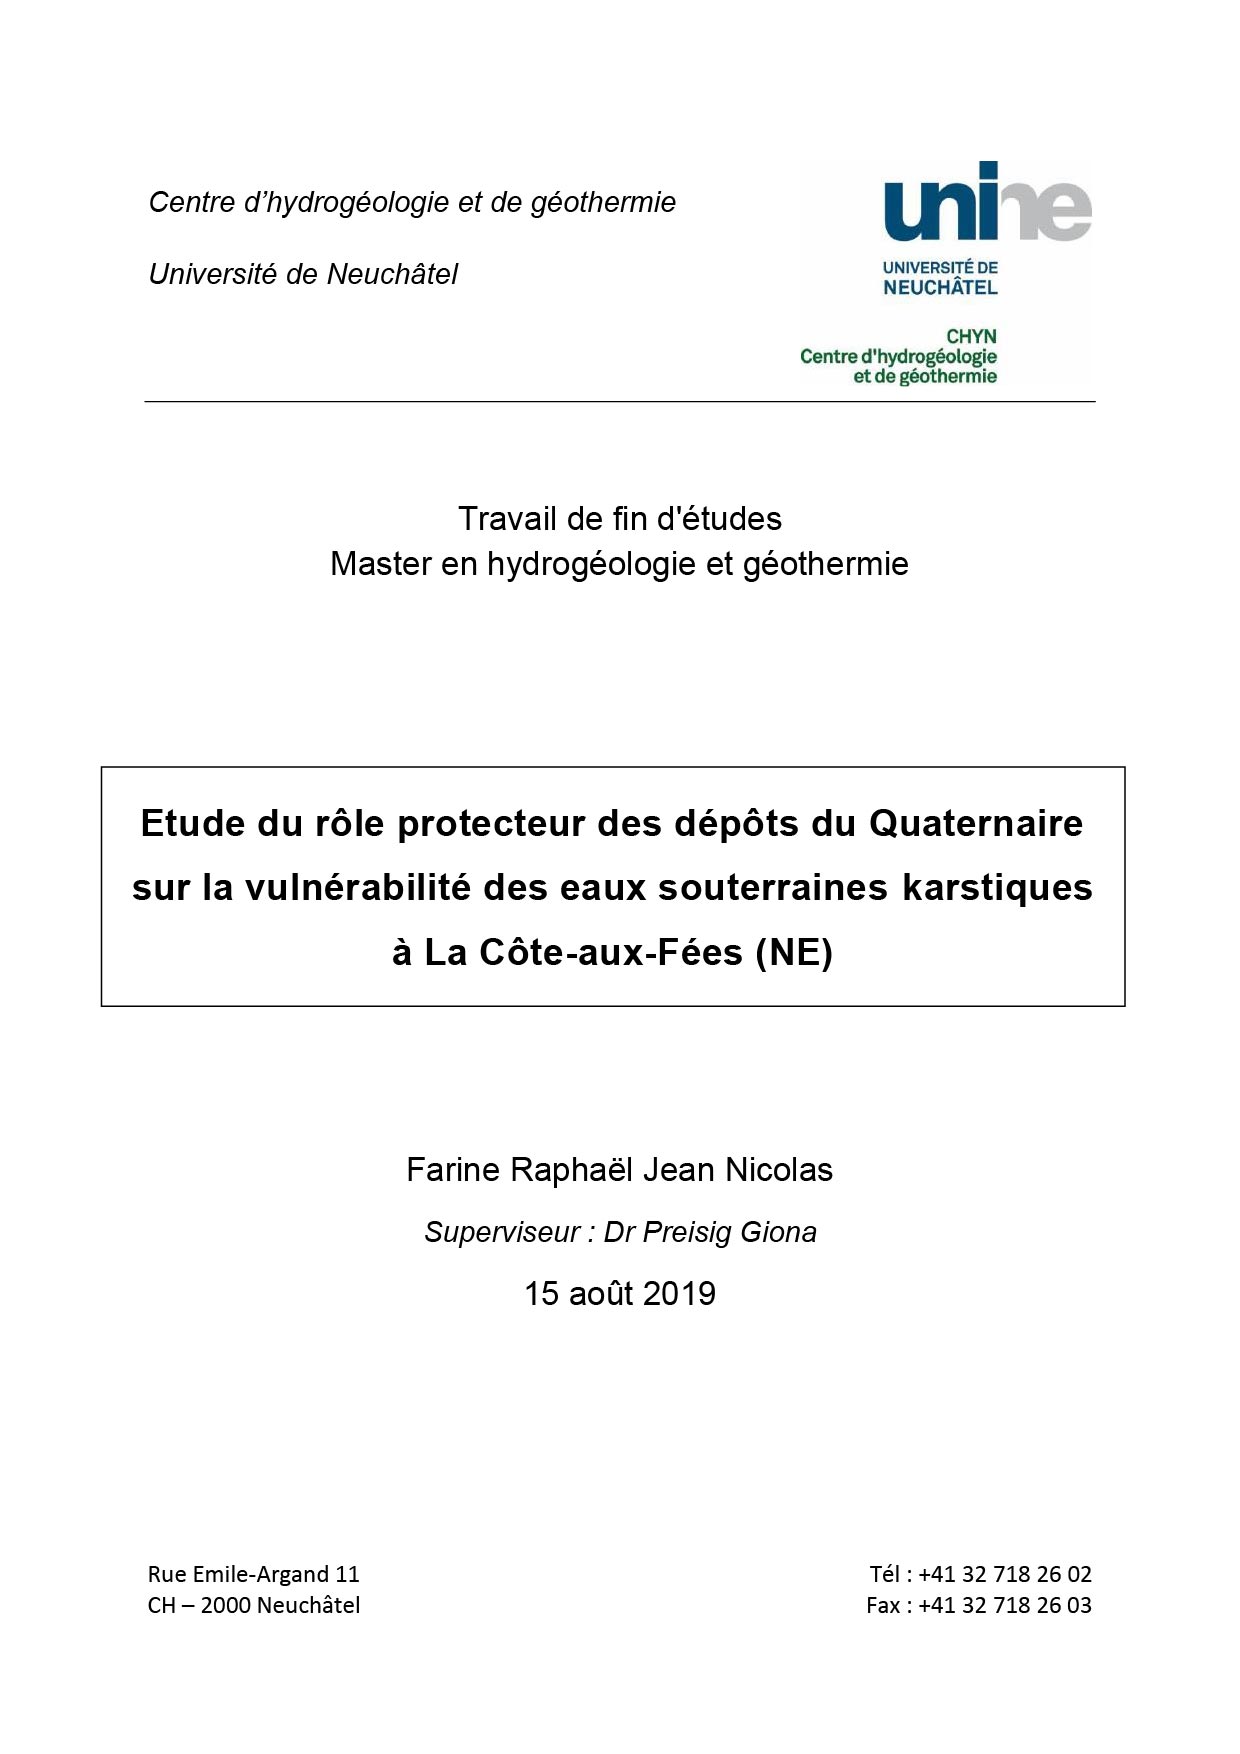 Travail de fin d'études Master en hydrogéologie et géothermie (Université de Neuchâtel, 2019)